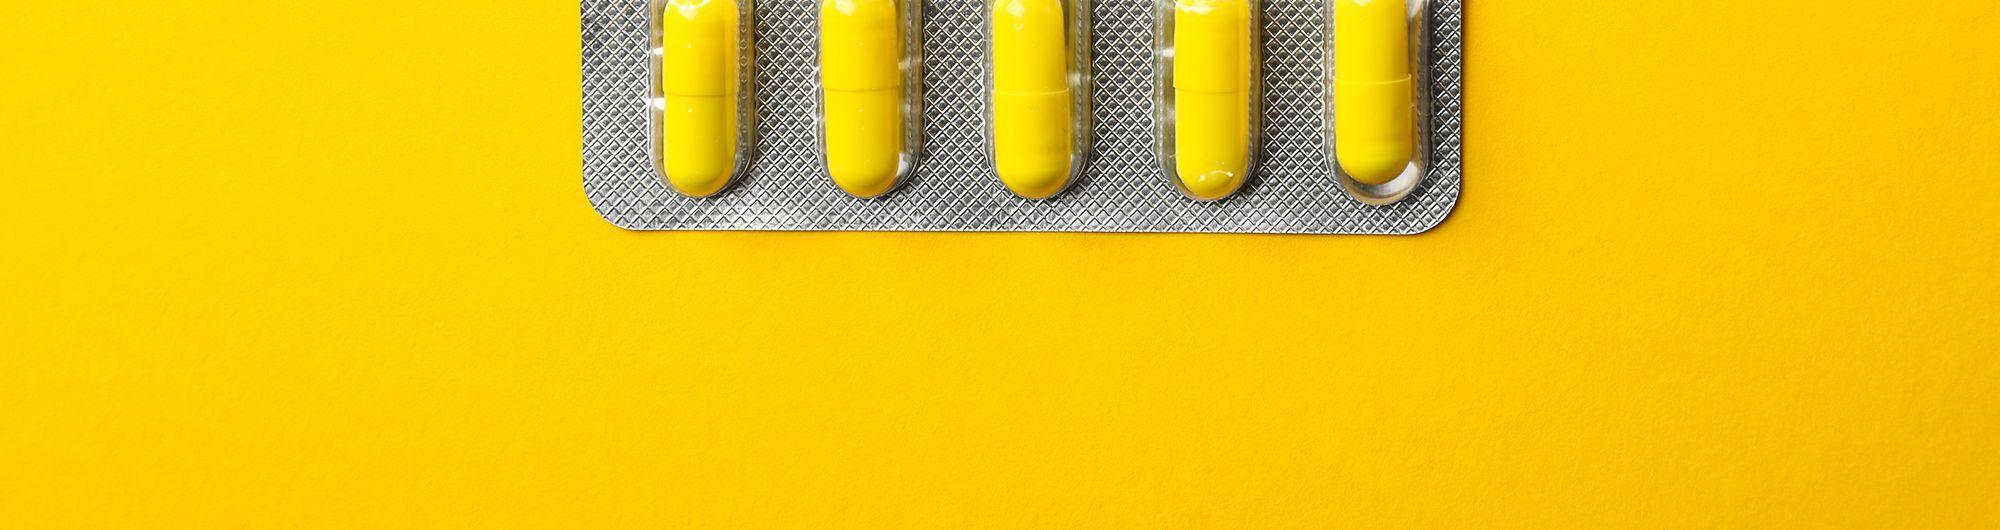 cartela de remédios amarelos em fundo amarelo 